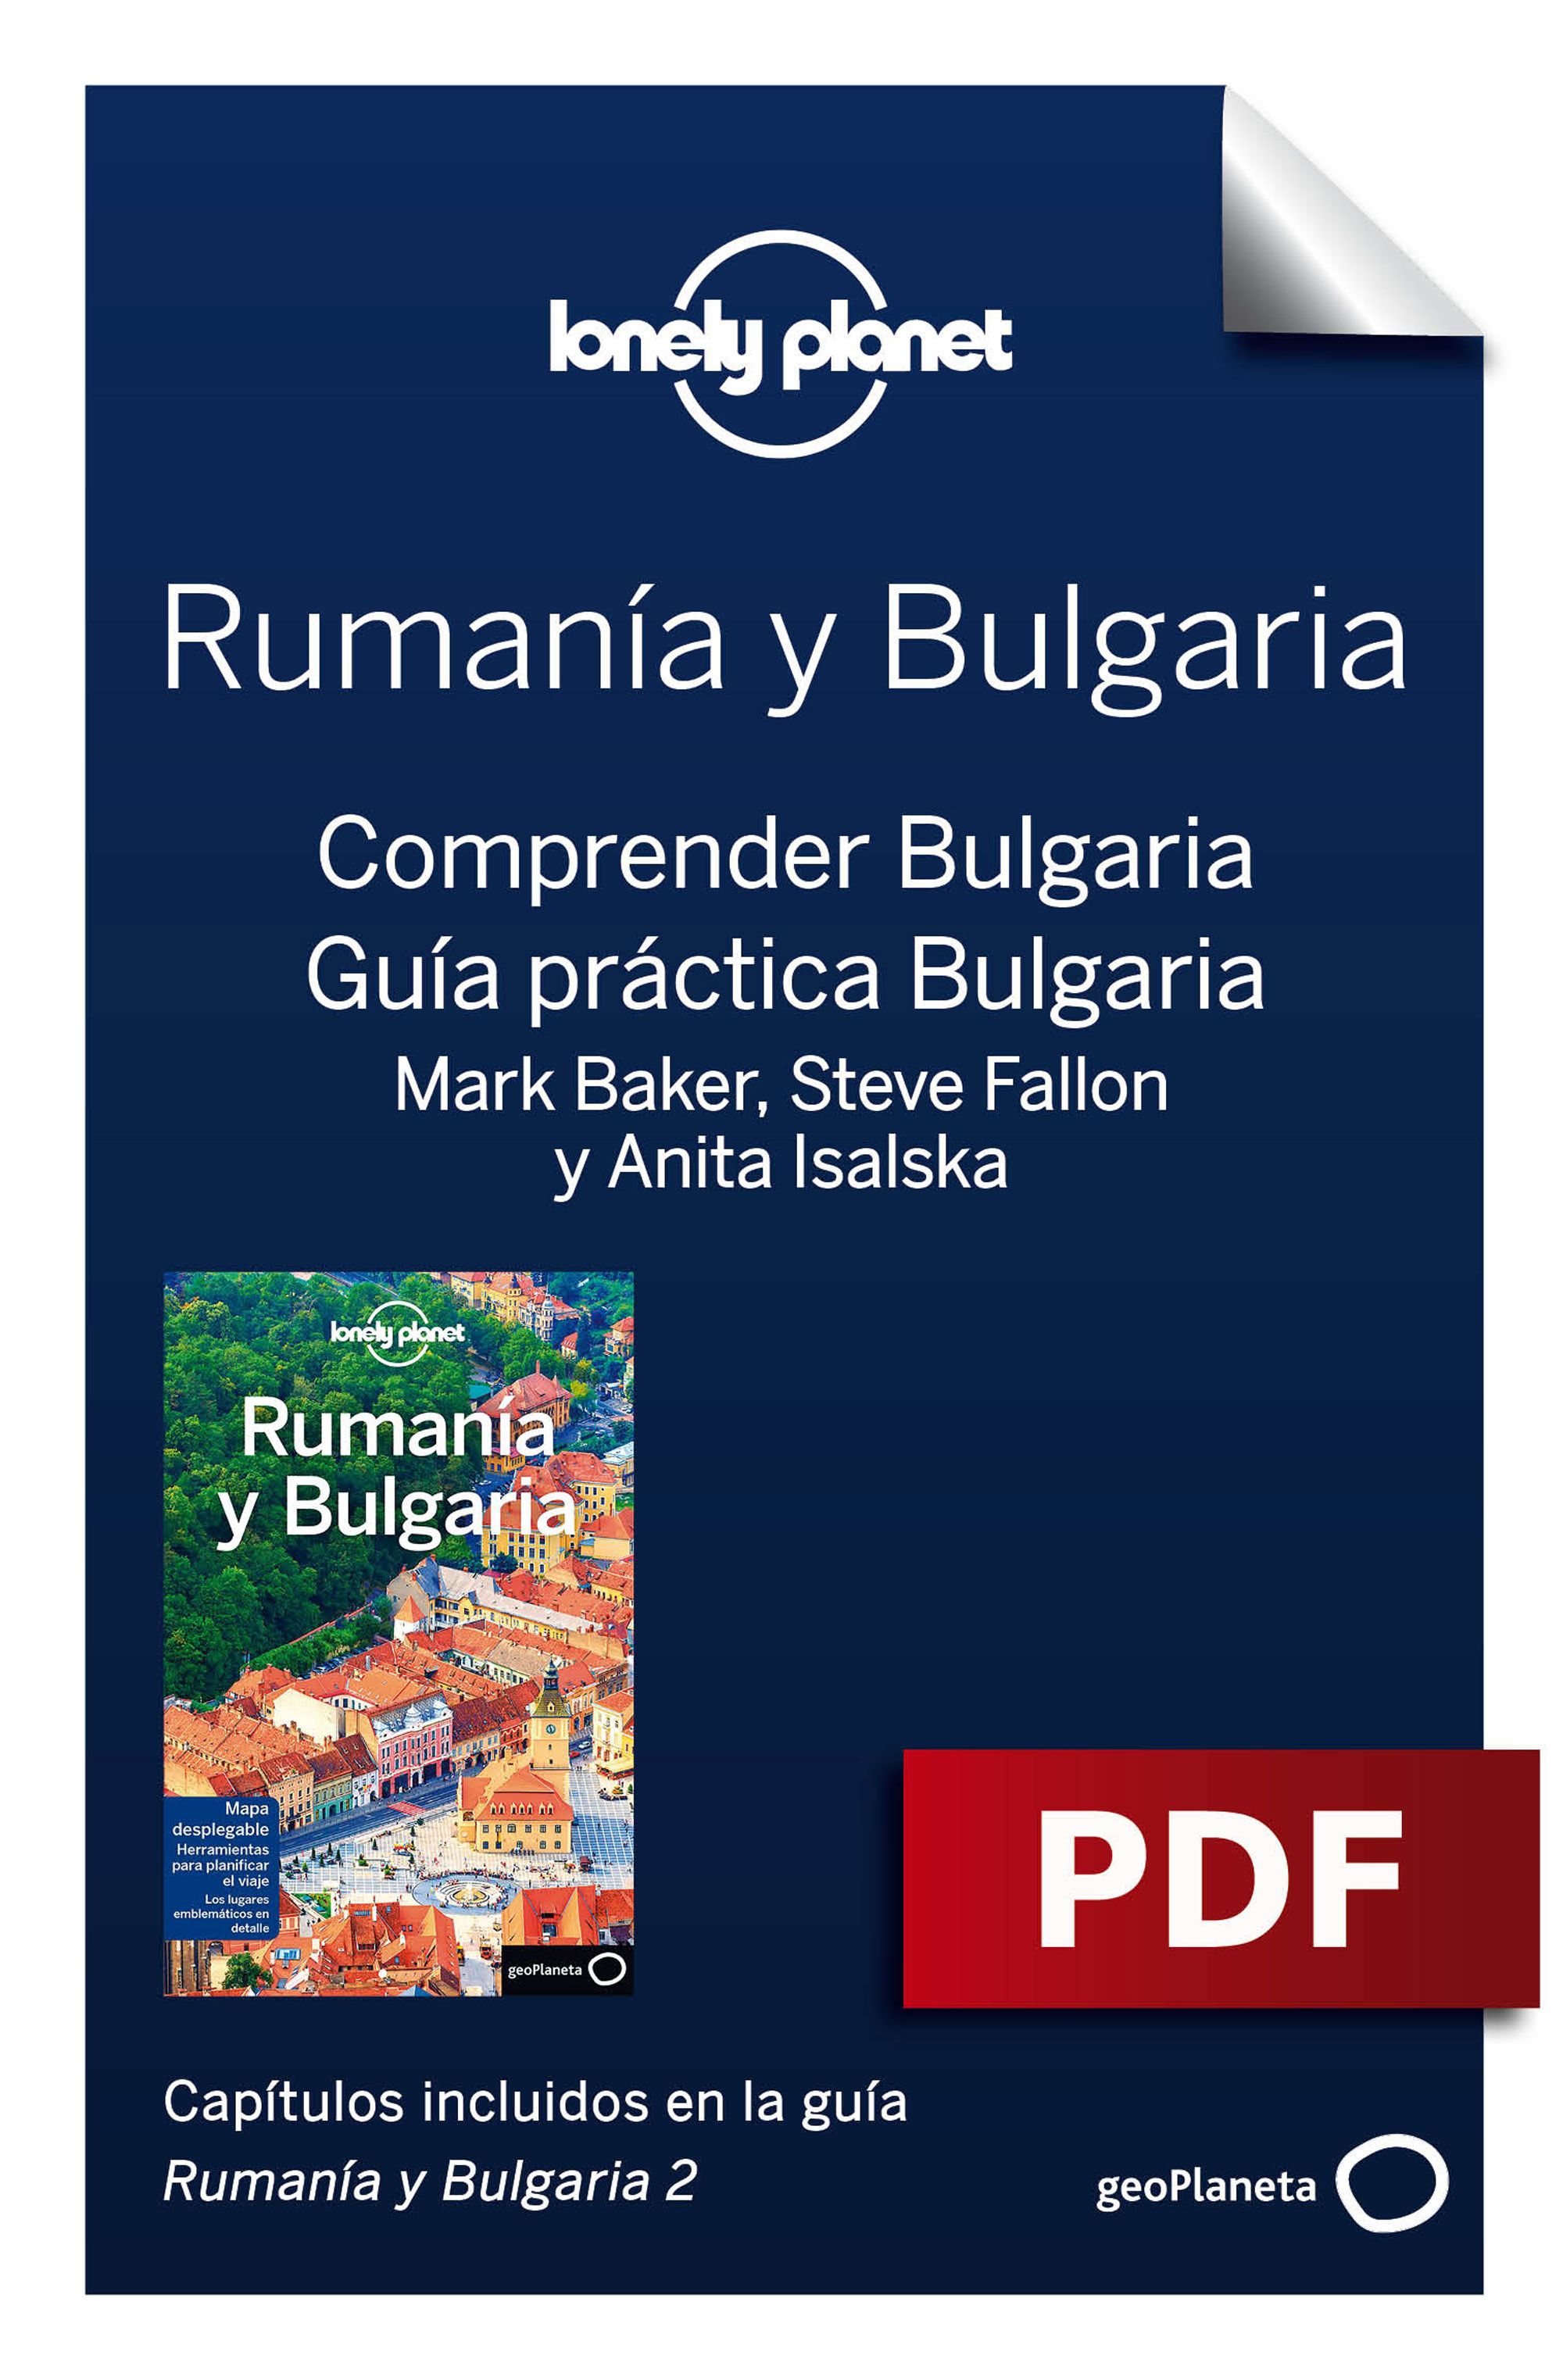 Comprender y Guía práctica Bulgaria